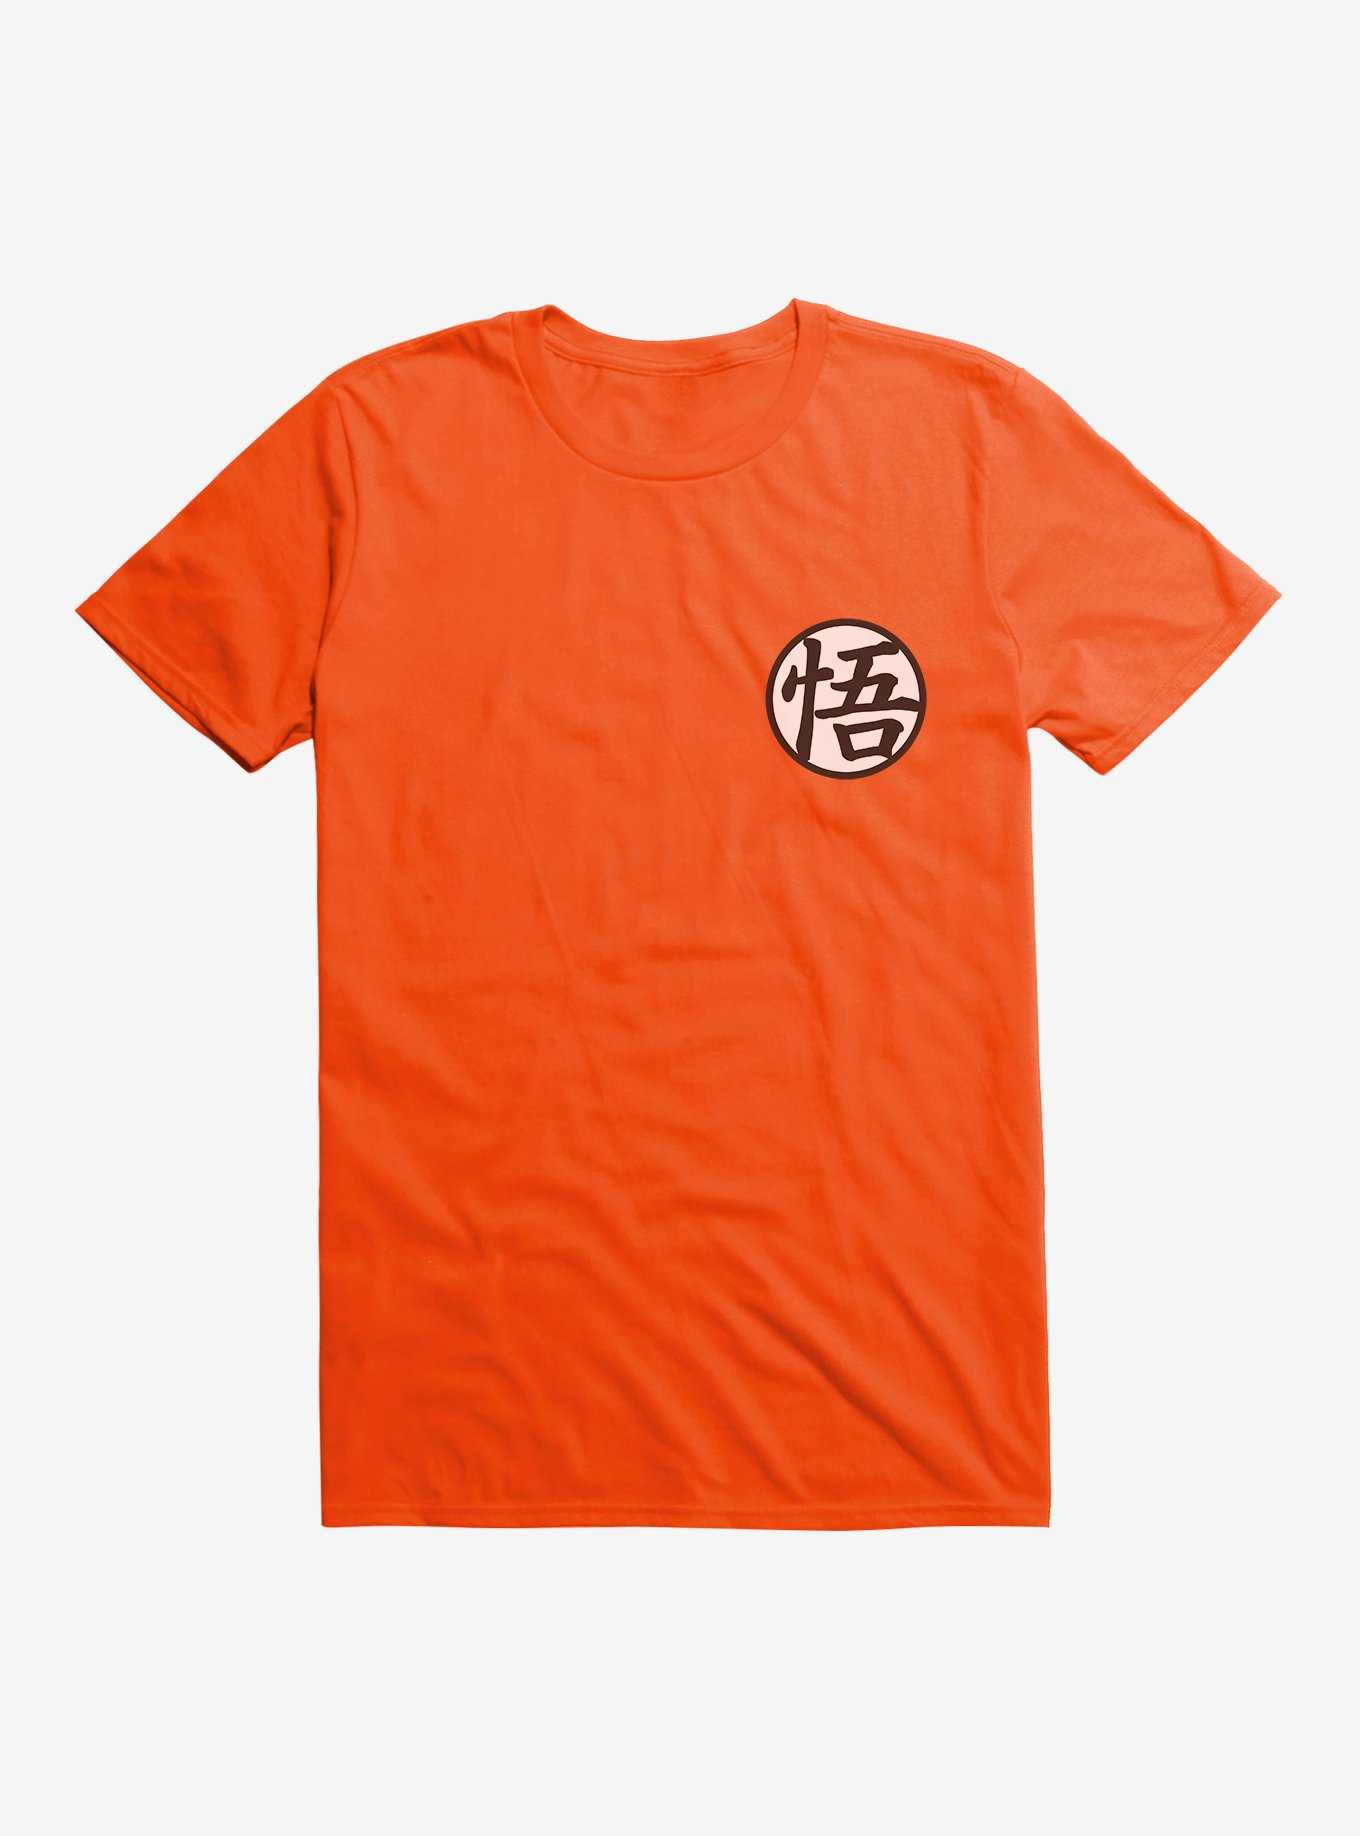 Dragon Ball Super Kame Symbol T-Shirt, , hi-res